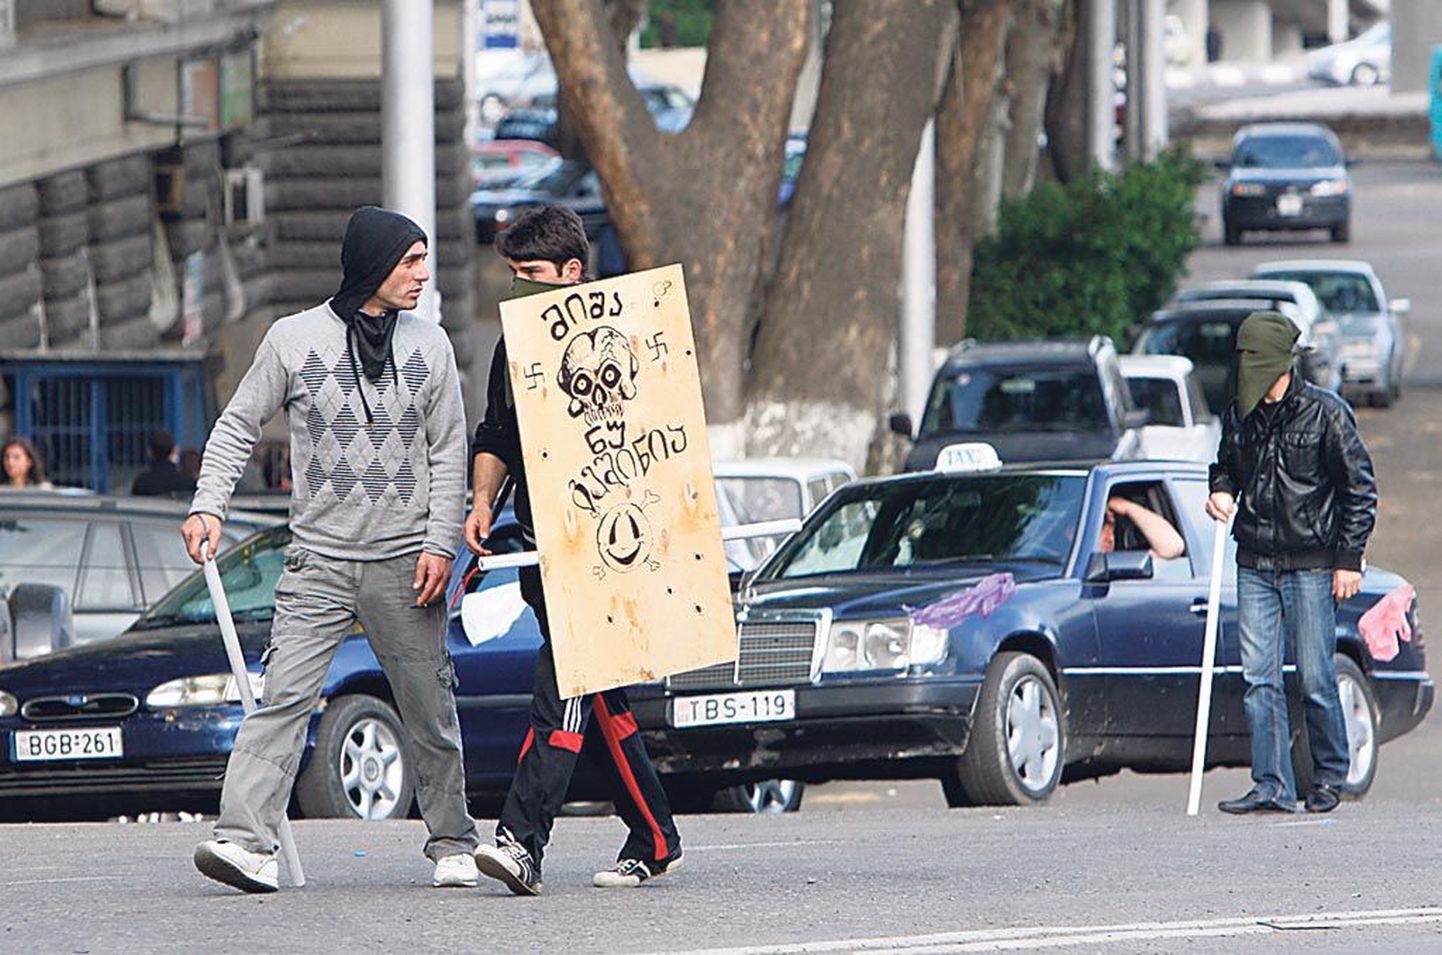 Gruusia opositsiooni toetajad hoiavad kaikaid ja plakatit kirjaga “Miša! Ära karda!”.